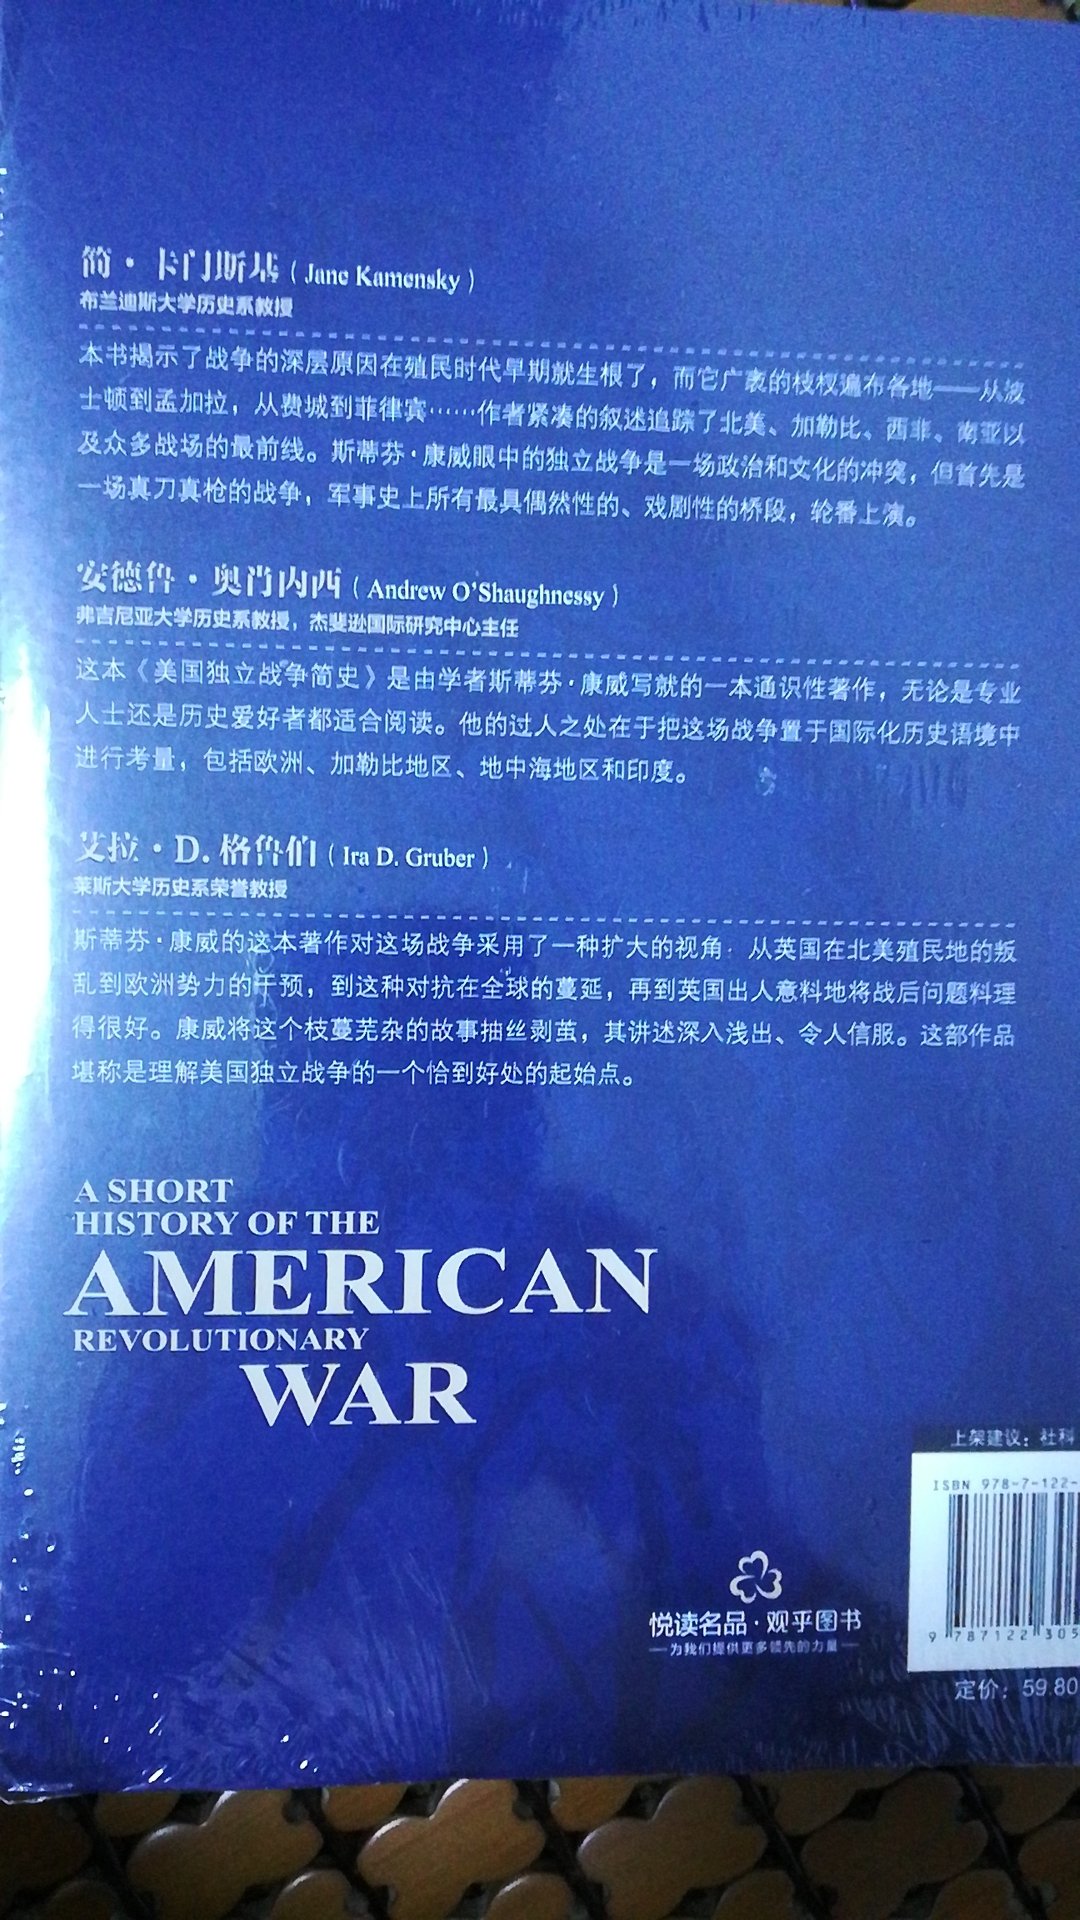 好书，对美国独立战争的历史不是很了解，了解一下。